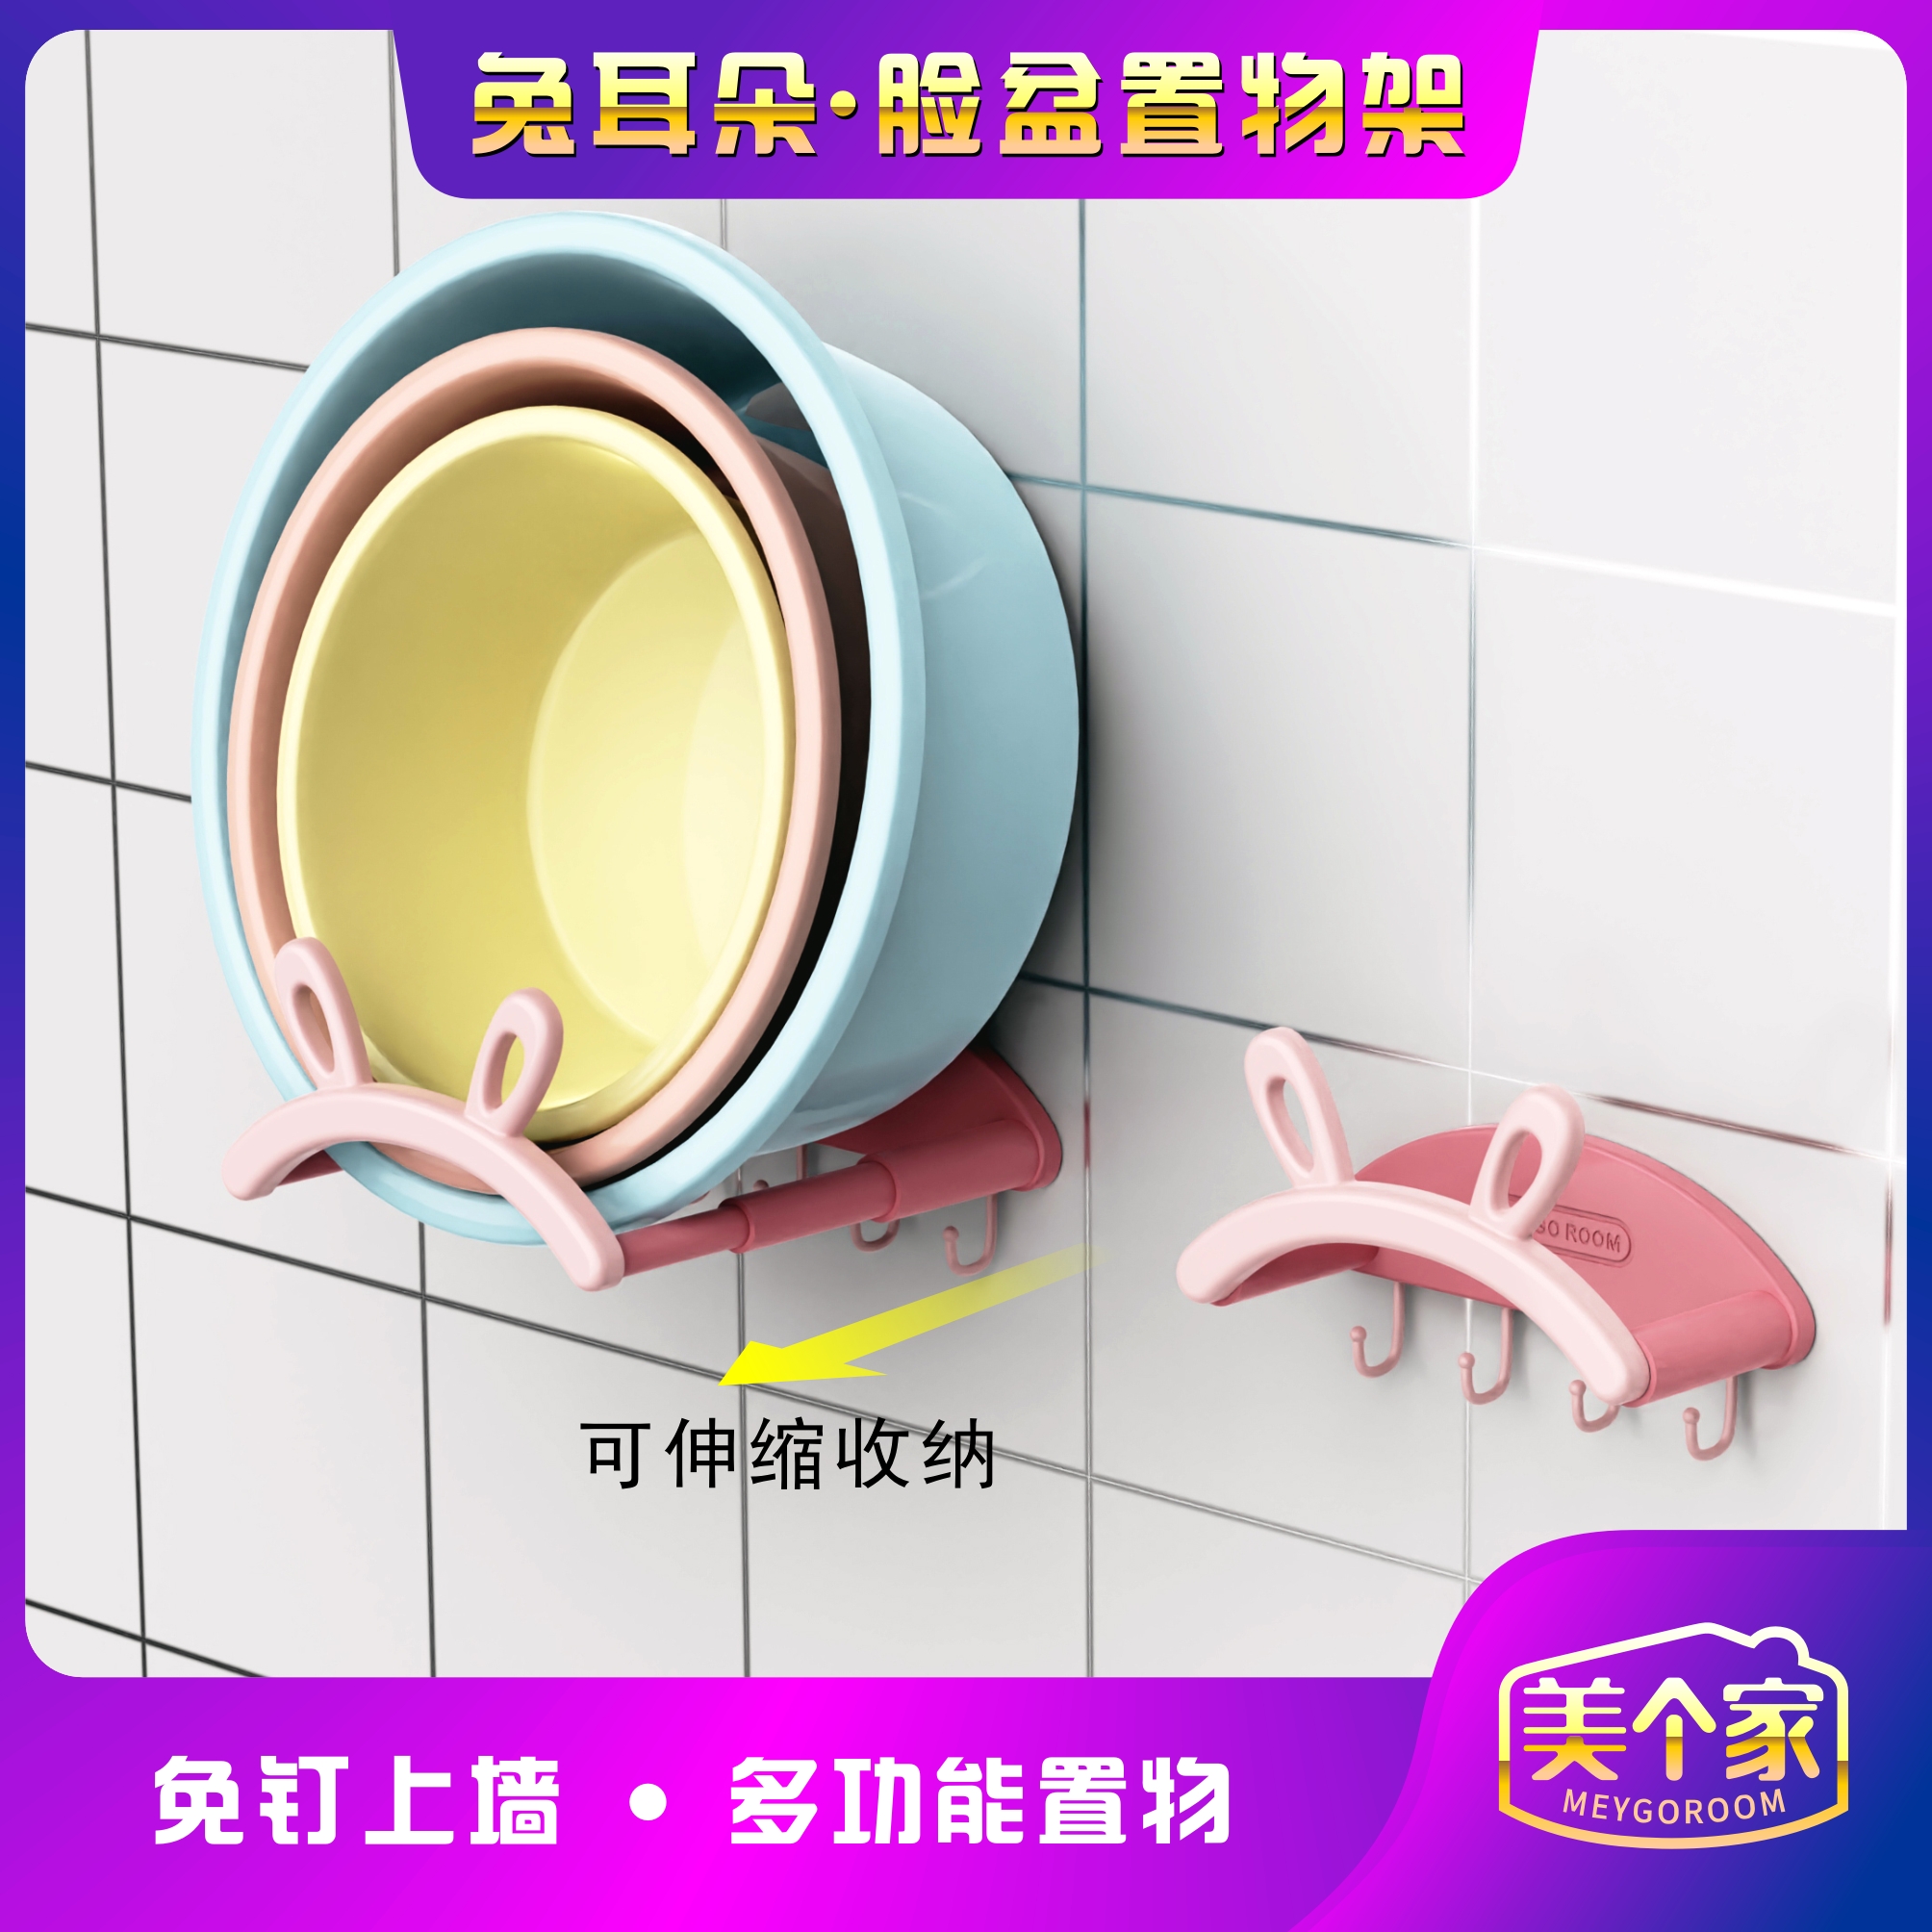 兔耳朵臉盆架可伸縮壁掛免打孔浴室置物架讓您輕鬆收納臉盆保持浴室整潔